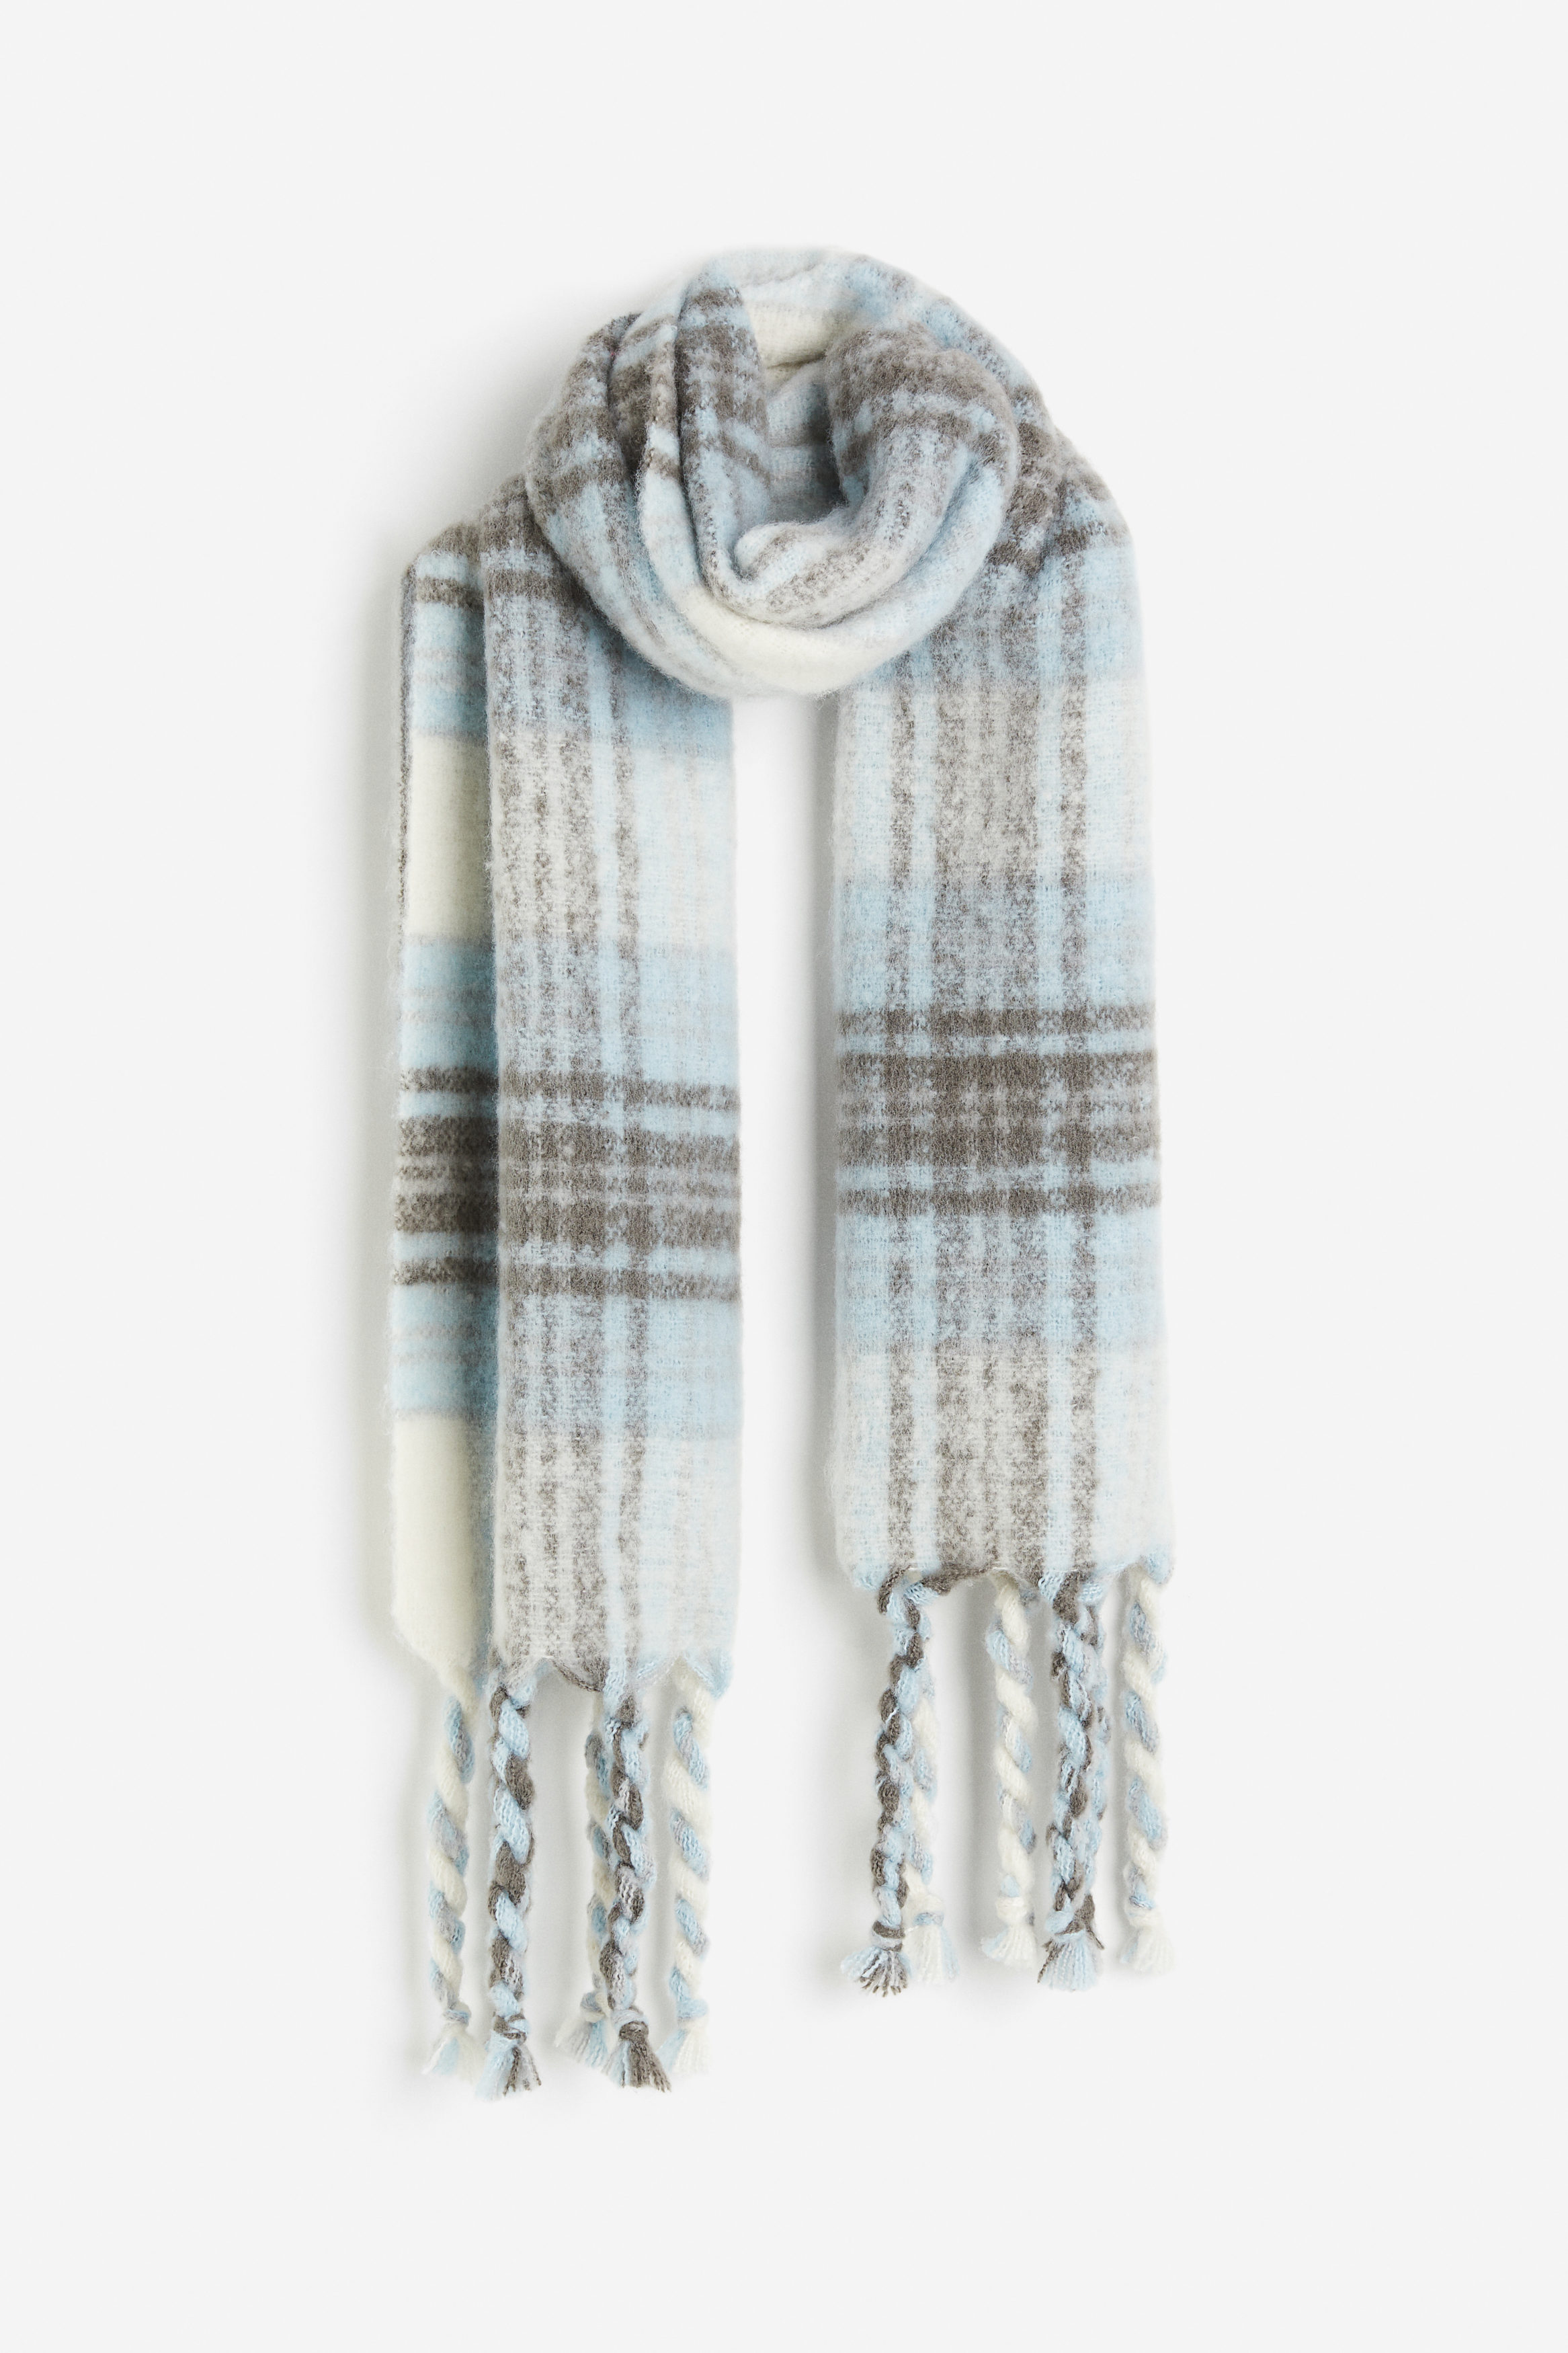 H&M Halstørklæde Lyseblå/ternet, Halstørklæder. Farve: Light blue/checked I størrelse Onesize